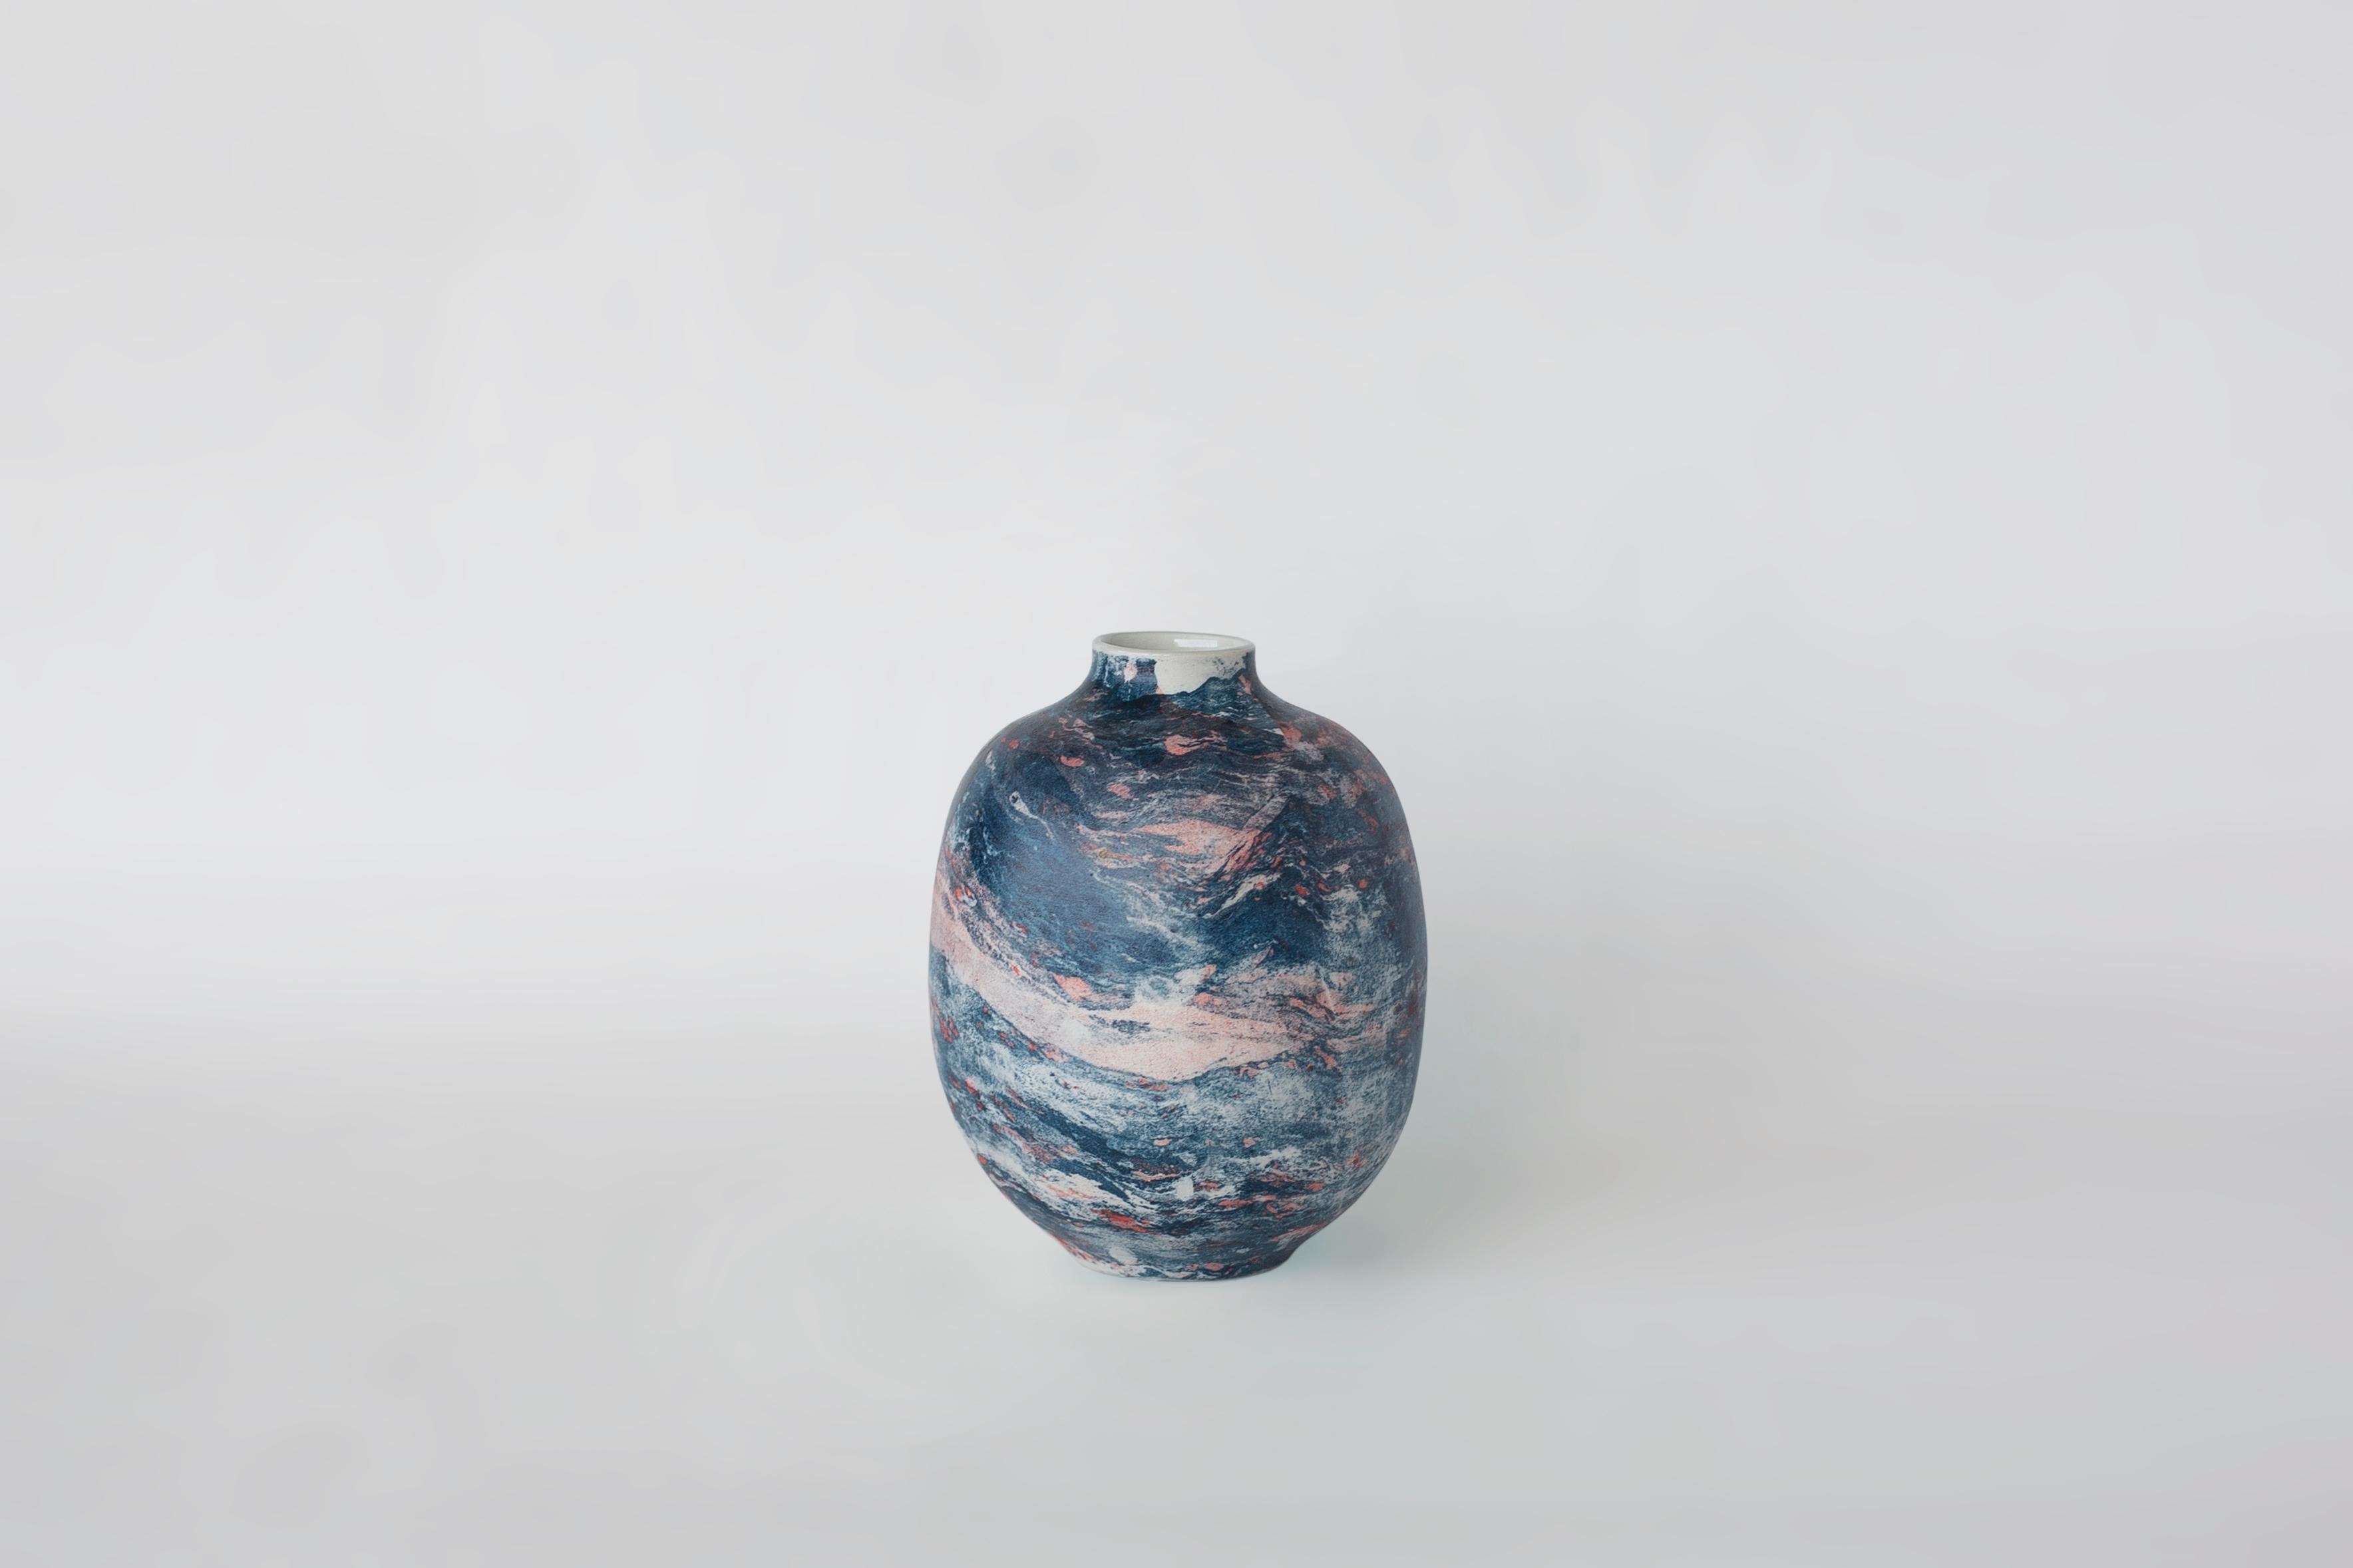 Kleine Marmorvase von Veronika Švábeníková
Abmessungen: 14 × 14 × 17,5 cm
MATERIALIEN: Keramik

Eine kleine Version einer wirklich einzigartigen Collection'S von Keramikvasen, die jede Einrichtung aufwertet.

Die Art und Weise, wie sie sie